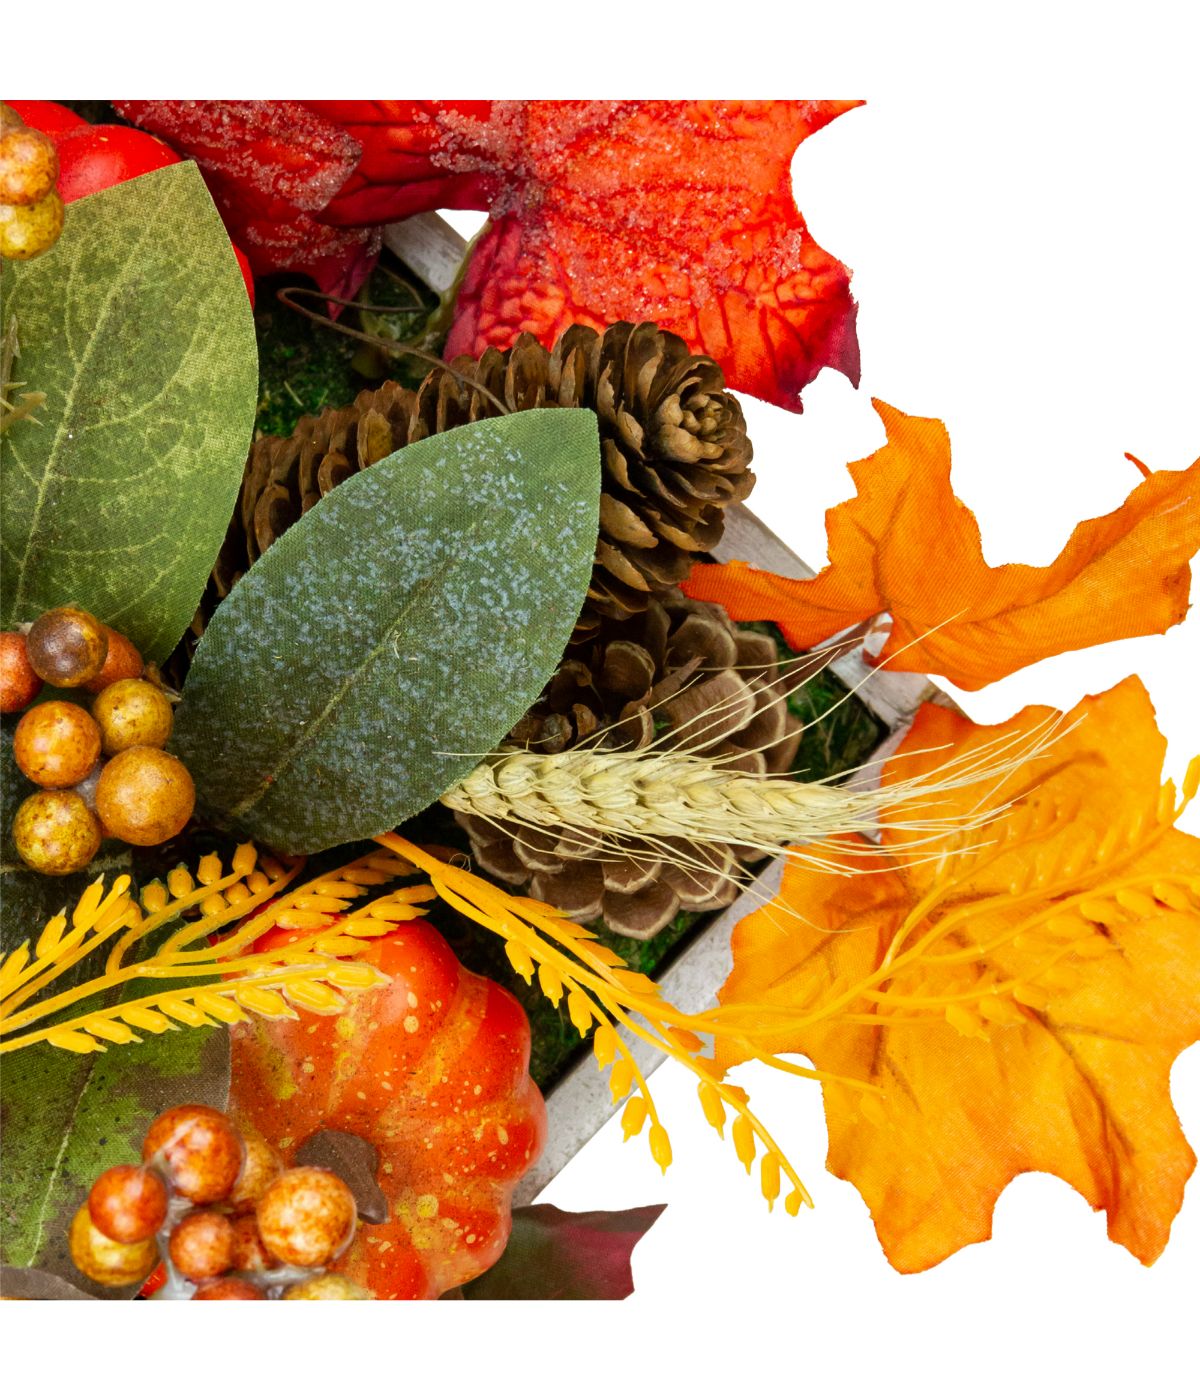 Autumn Harvest Arrangement "Thankful" Centerpiece Brown